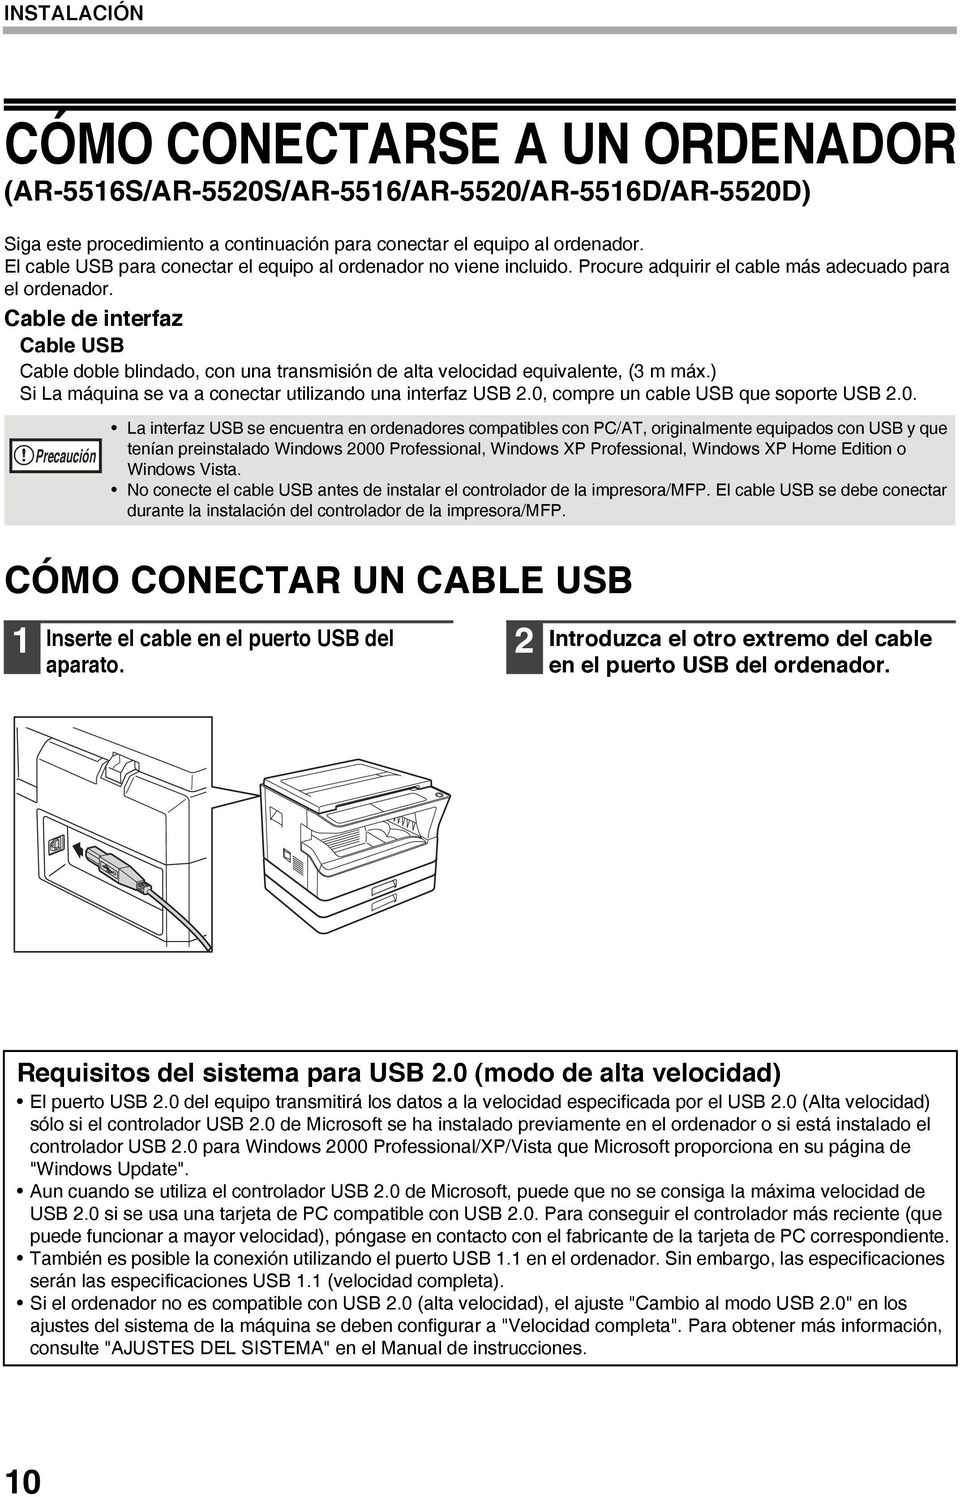 Cable de interfaz Cable USB Cable doble blindado, con una transmisión de alta velocidad equivalente, (3 m máx.) Si La máquina se va a conectar utilizando una interfaz USB 2.